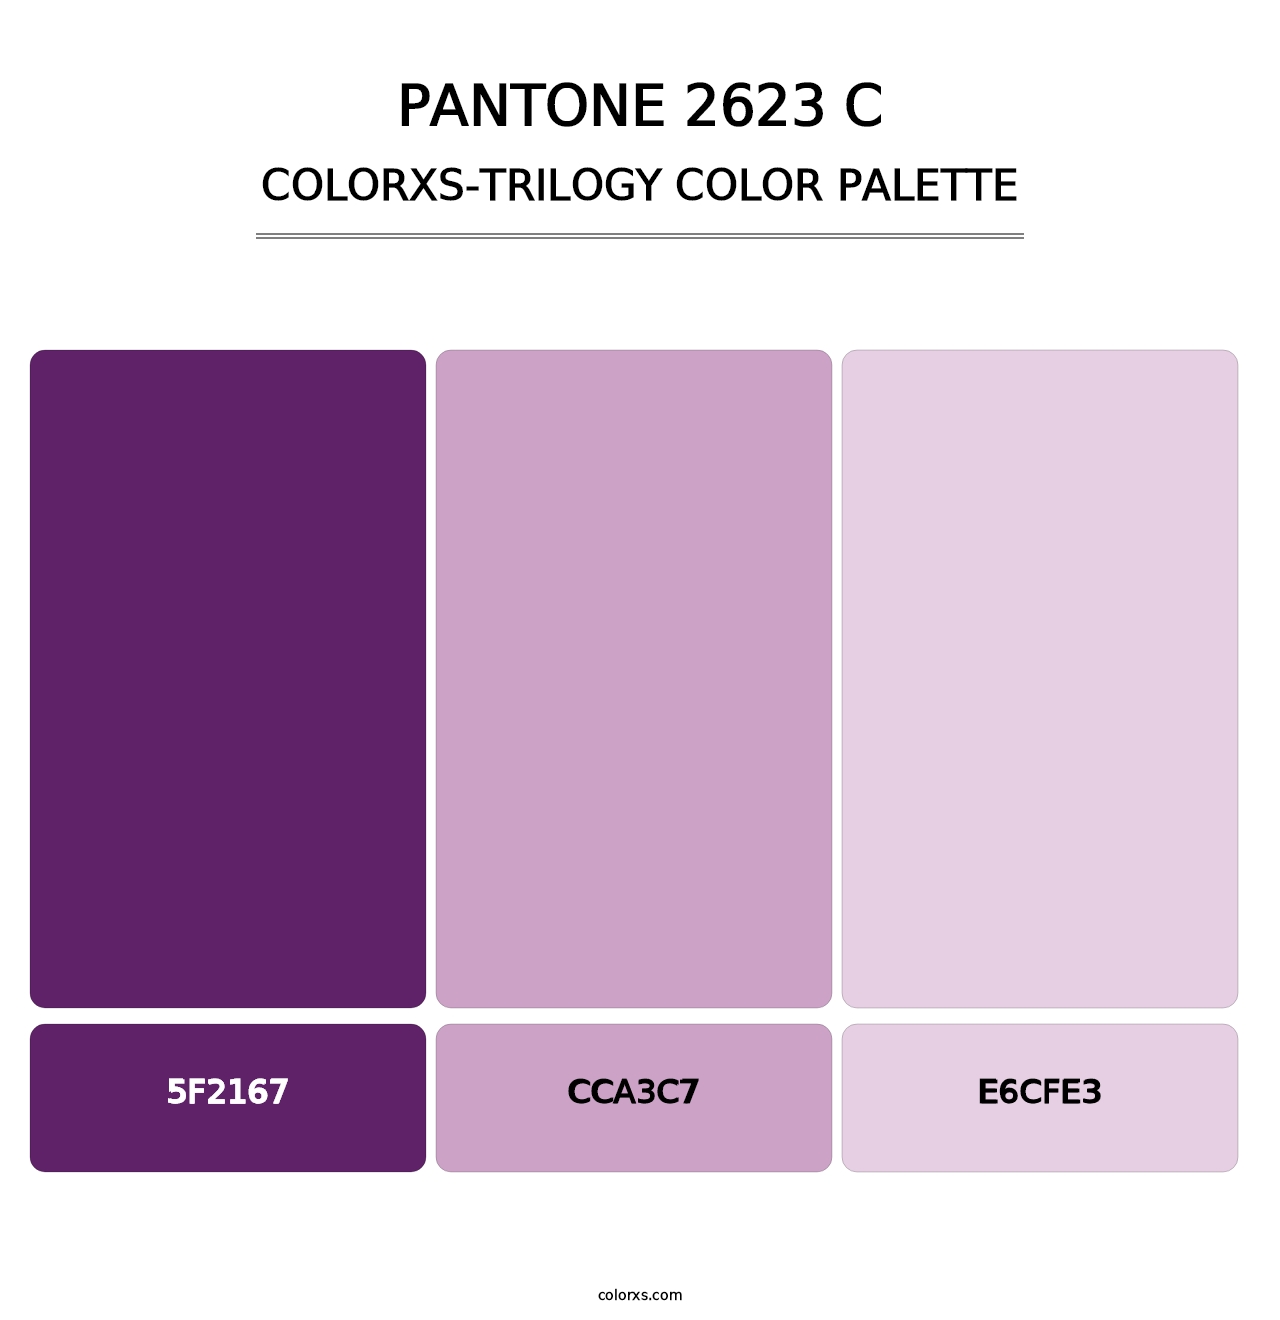 PANTONE 2623 C - Colorxs Trilogy Palette